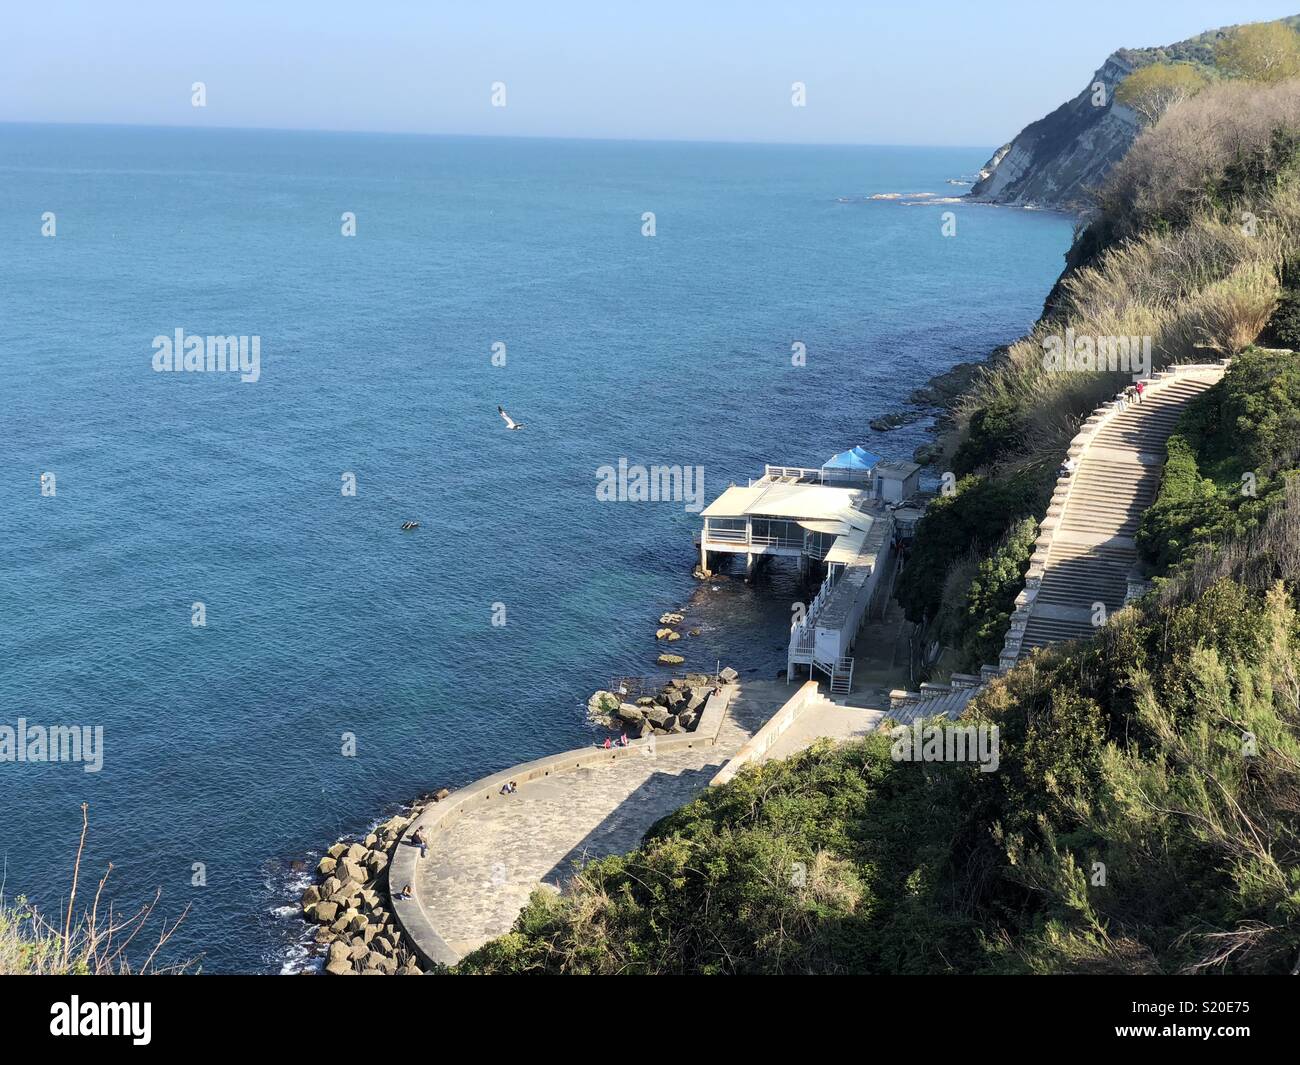 Coastal view, Ancona, Marche region, Italy Stock Photo